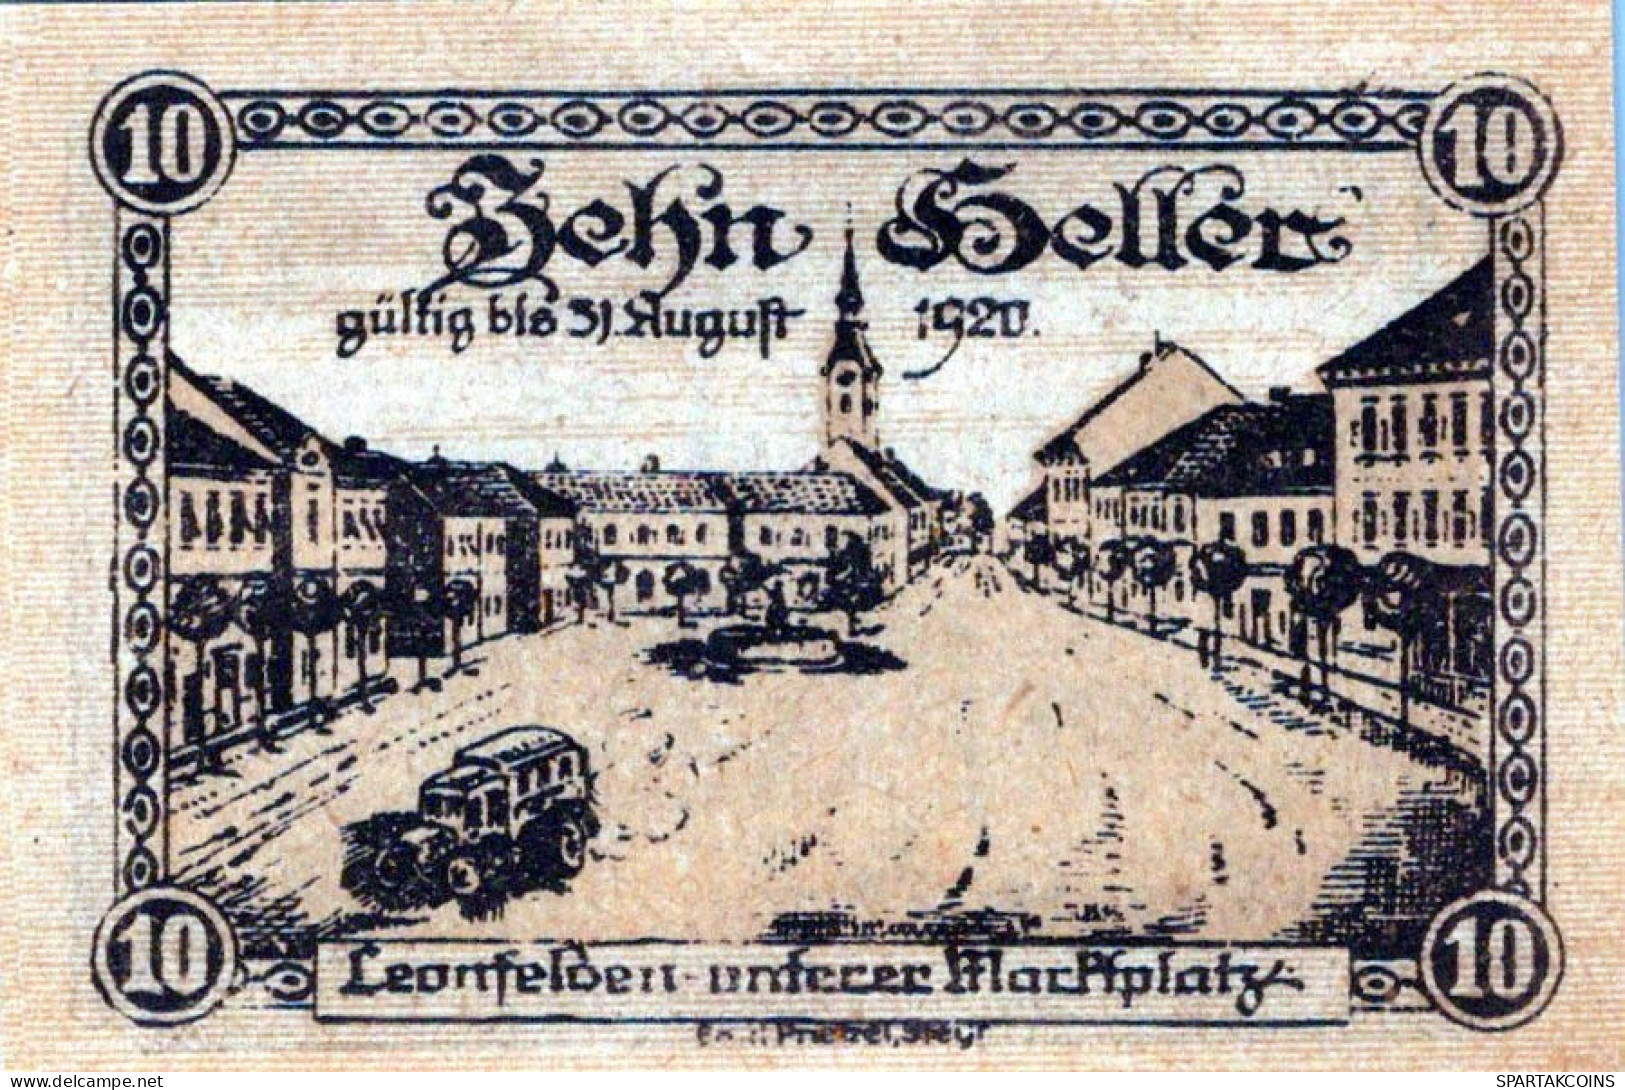 10 HELLER 1920 Stadt LEONFELDEN Oberösterreich Österreich Notgeld #PI156 - [11] Emissions Locales